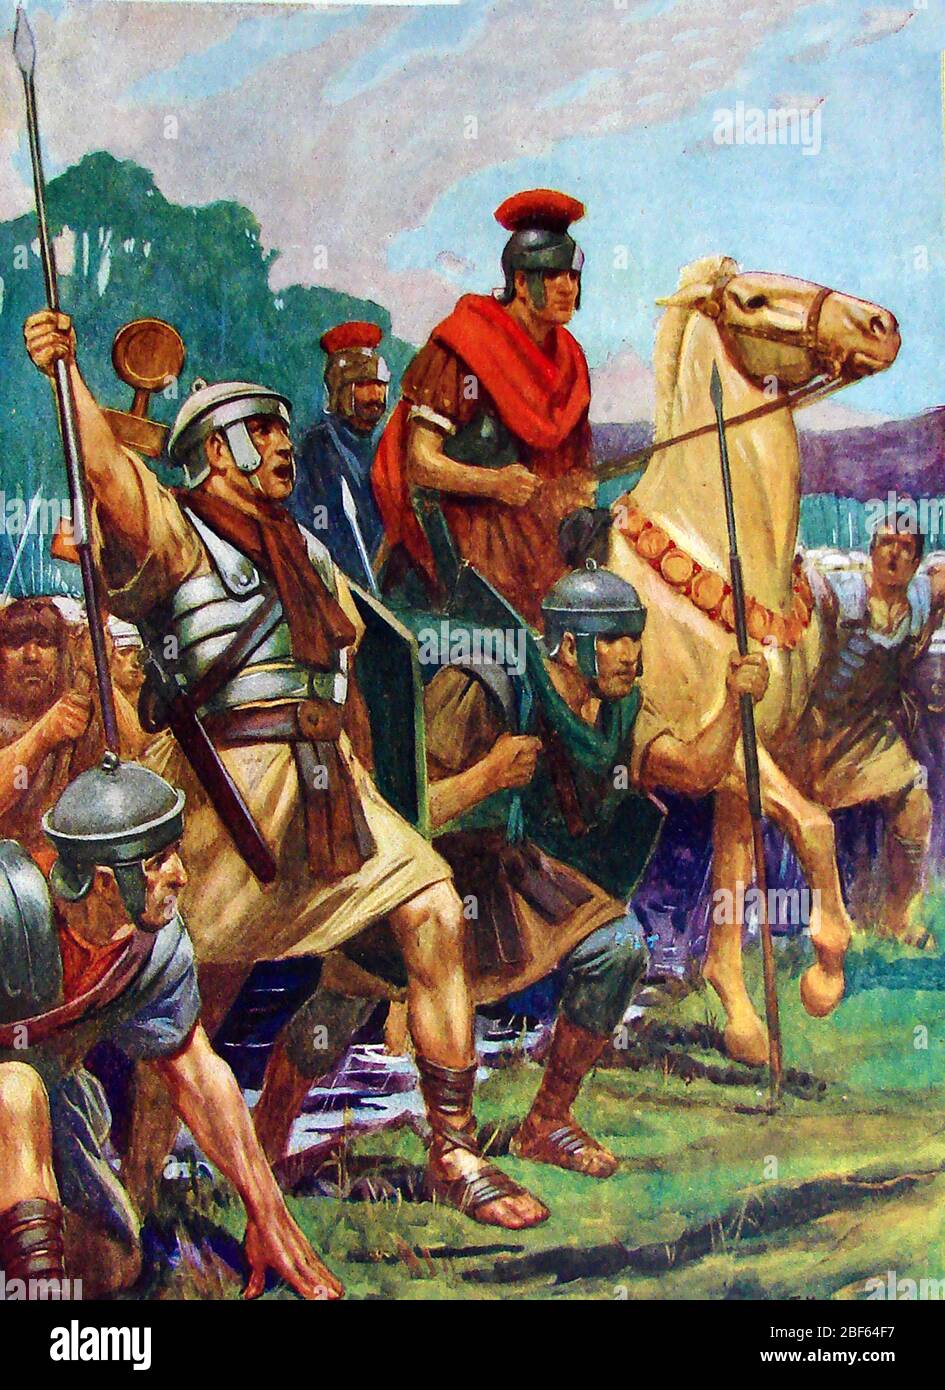 Circa 1940, illustration couleur montrant l'armée de Jules César franchissant la rivière Rubicon le Janvier 49 BC précipitant la guerre civile Romaine Banque D'Images